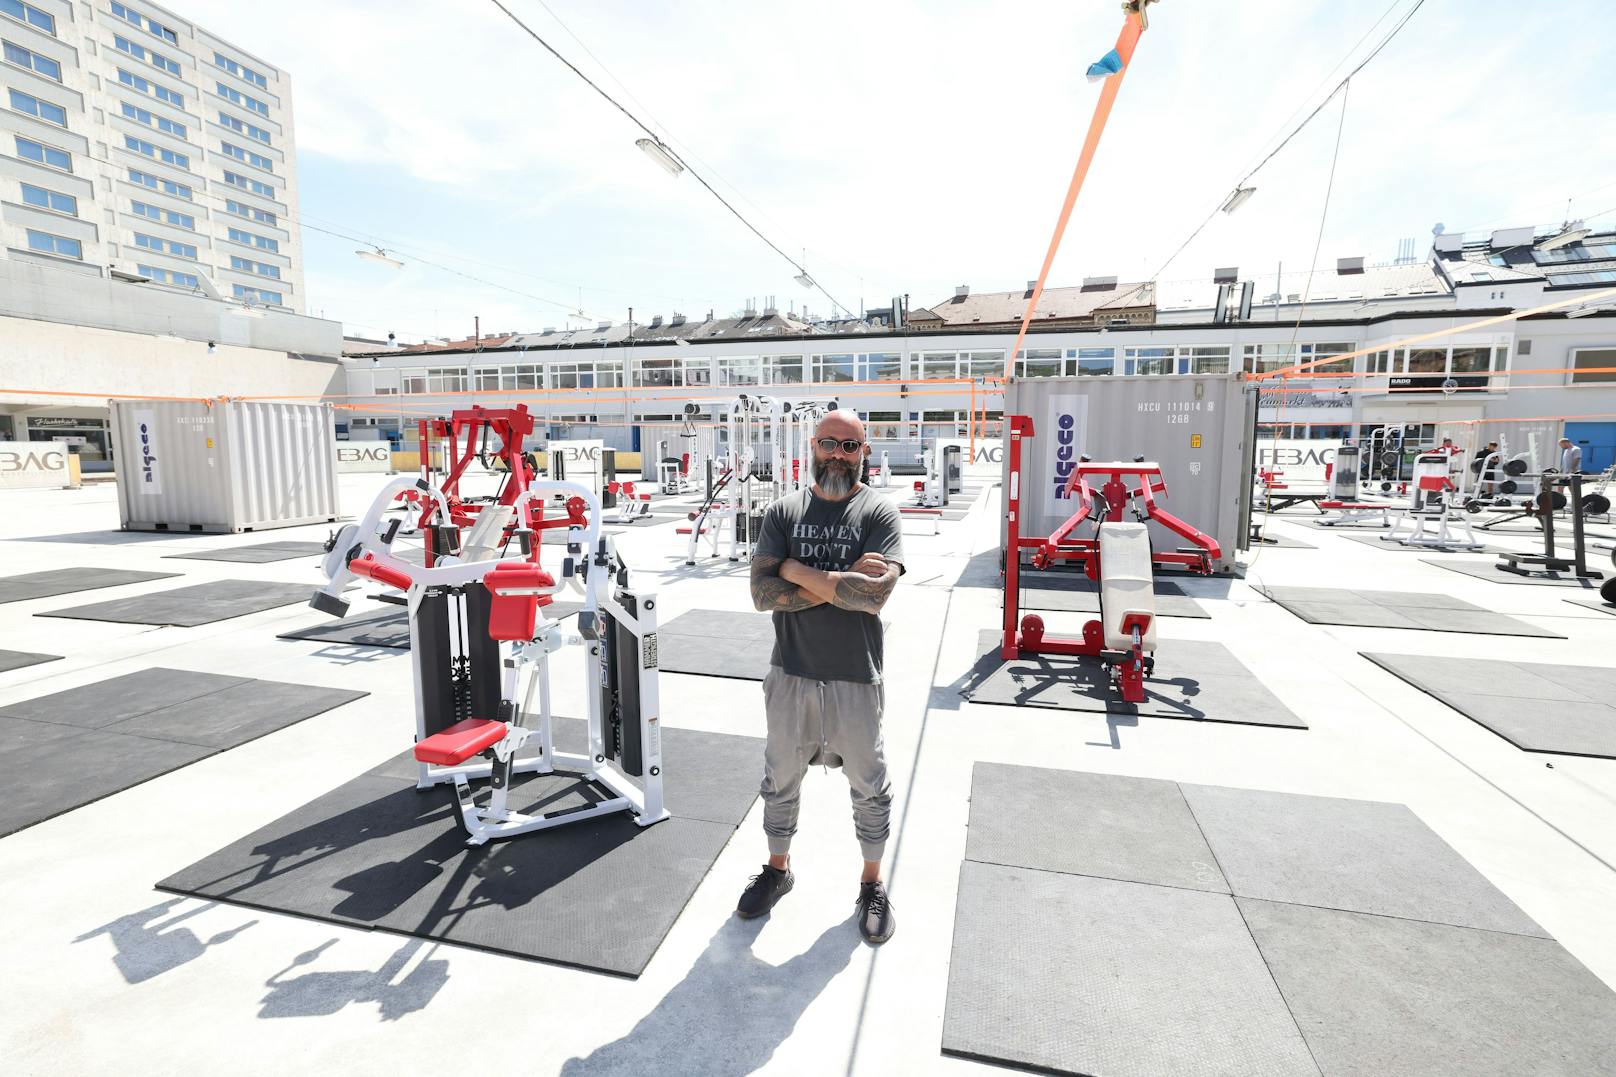 Inhaber Ussy Doleh hat das Fitnesscenter im Freien in nur einer Woche auf die Beine gestellt.